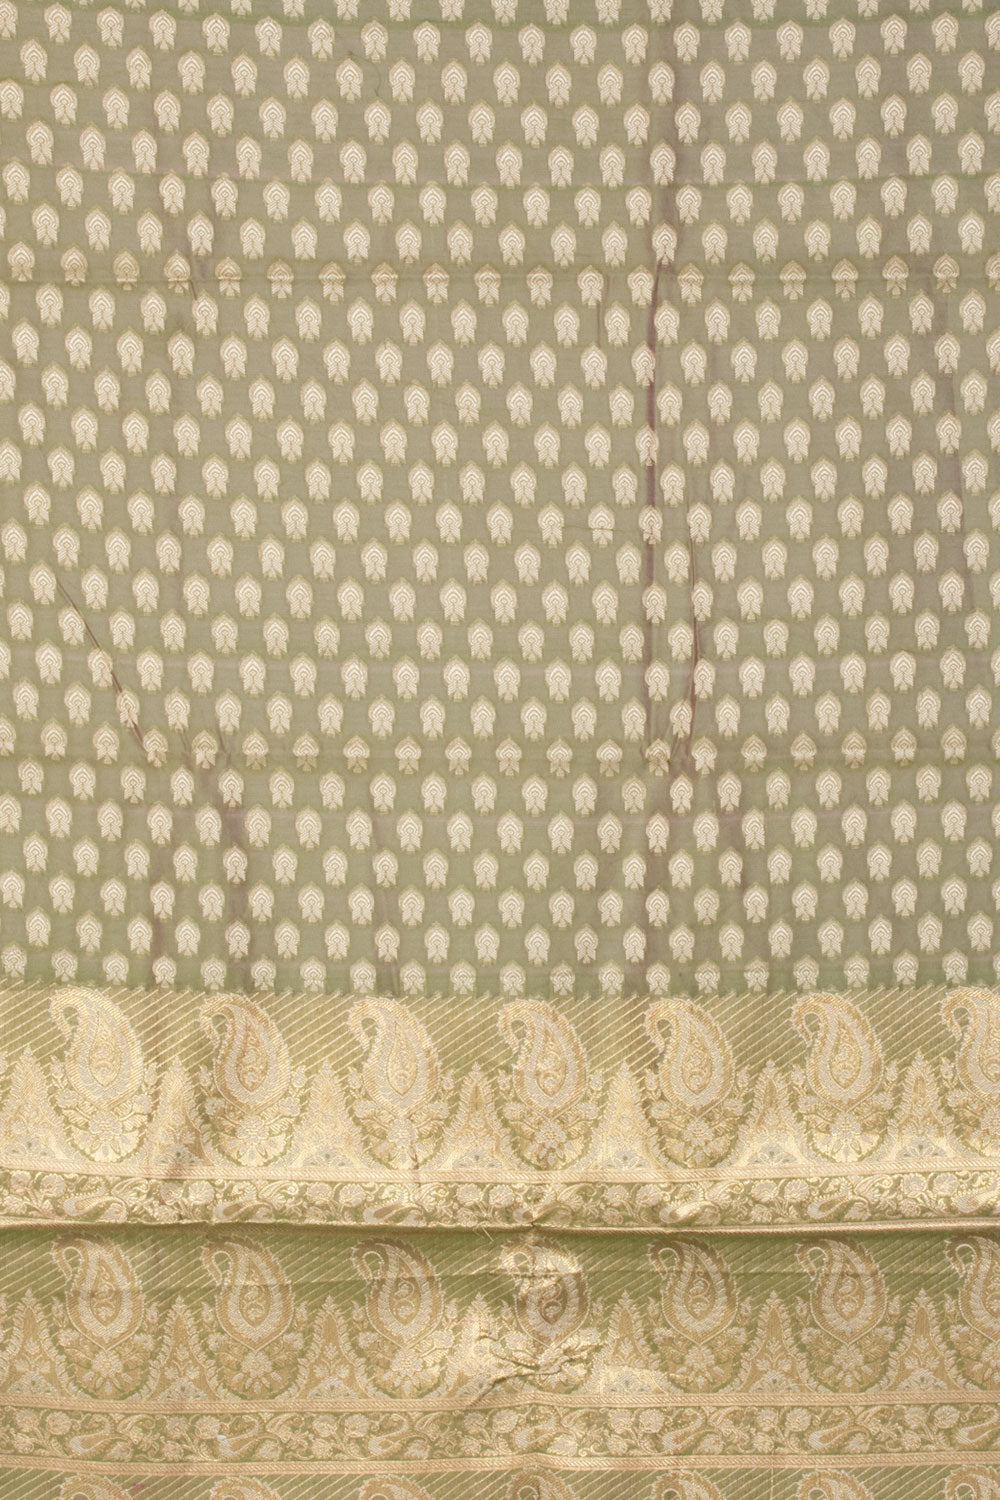 Avocado Green Banarasi Cotton Salwar Suit Material 10061163